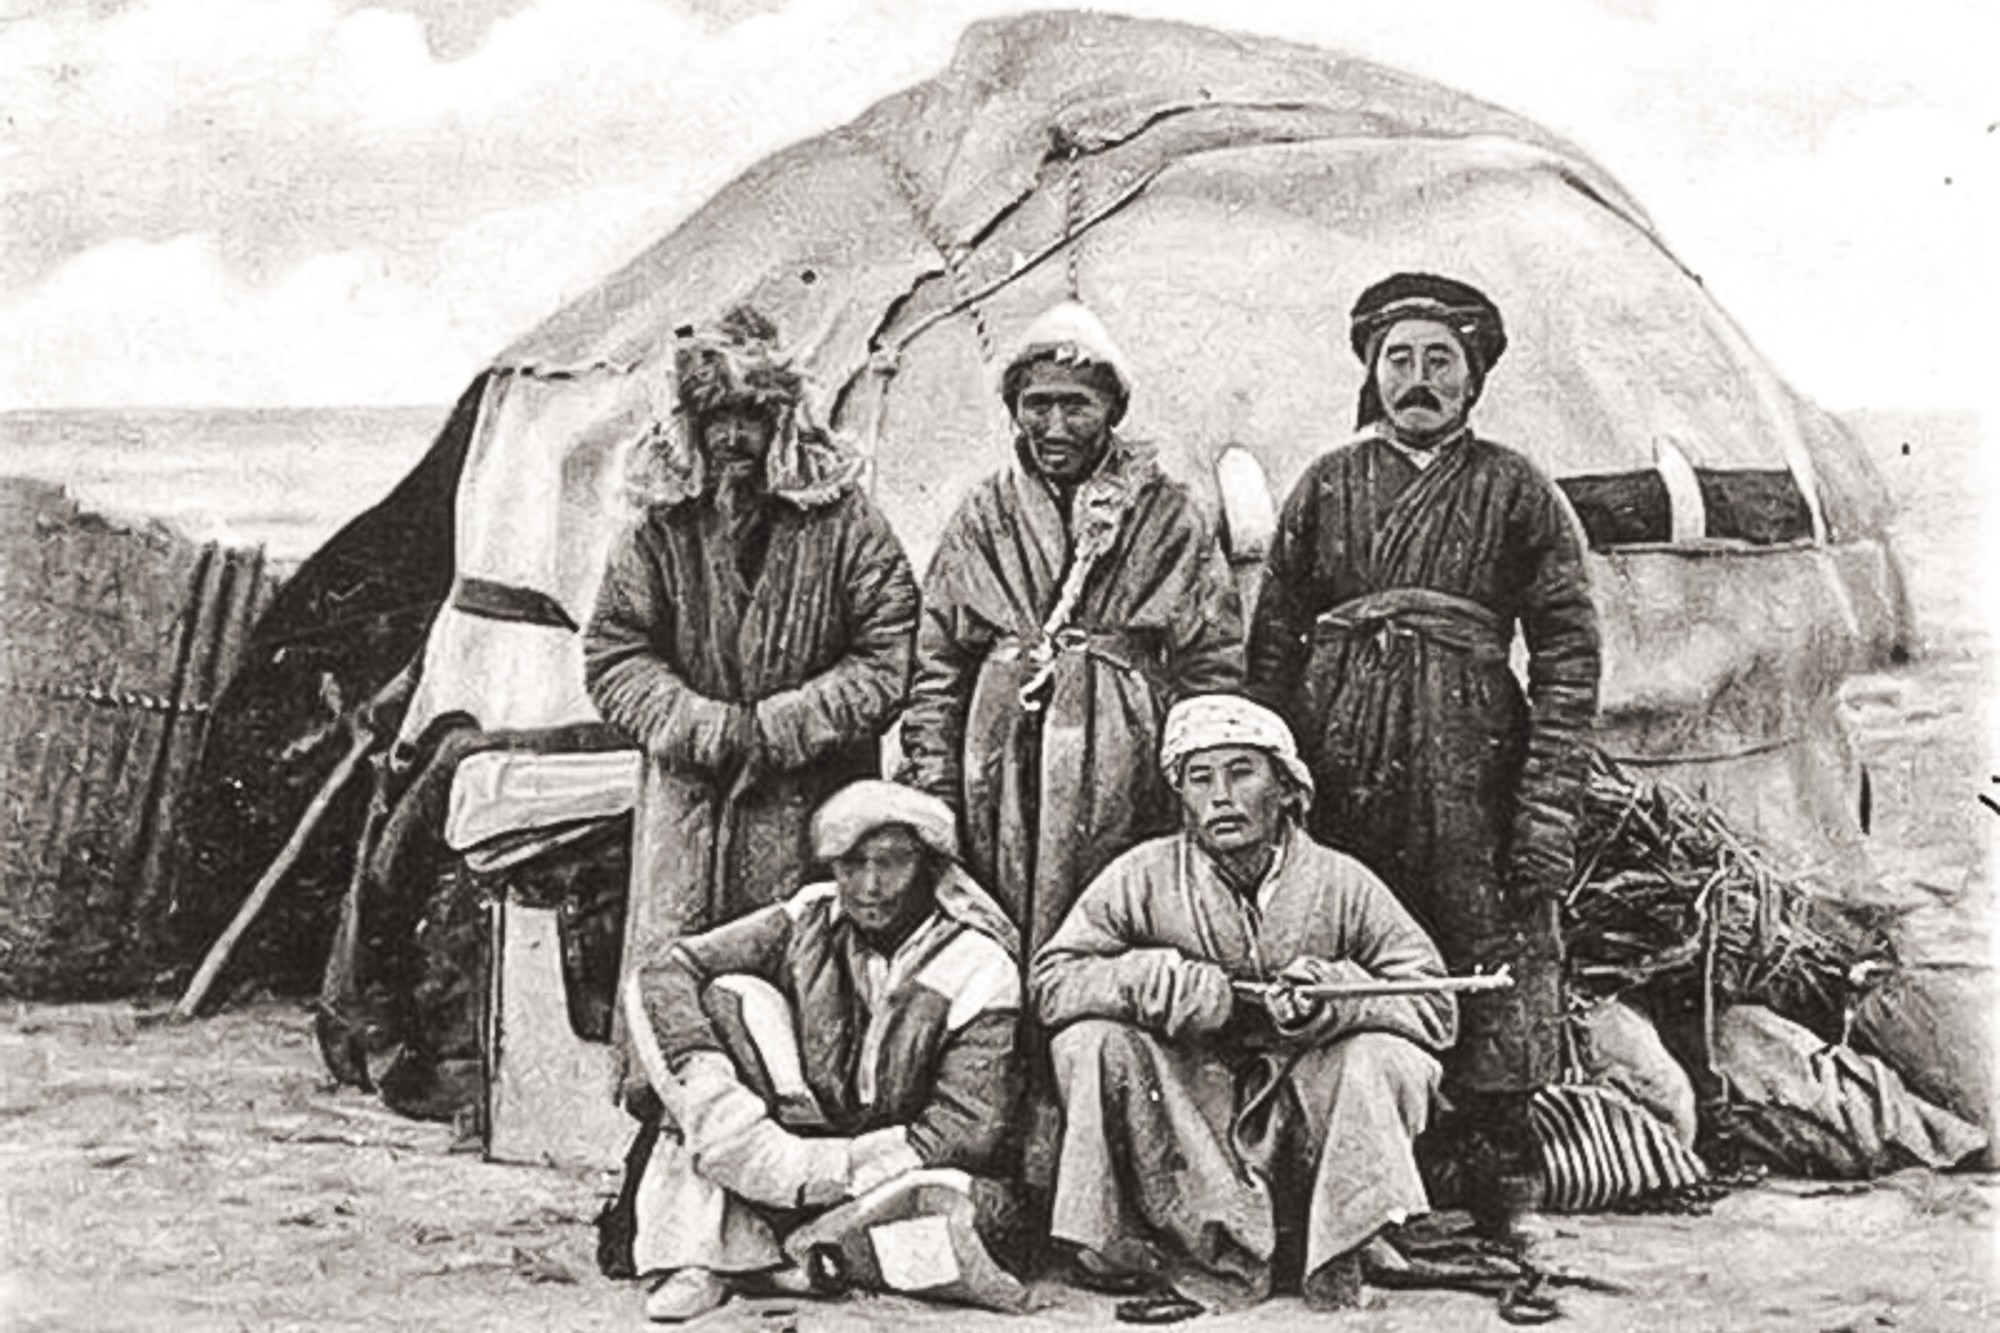 Киргиз 18. Юрты алтайцев 19 век. Киргизские кочевники 19 век. Киргизы Азии 19 век. Казахская степь 19 век.